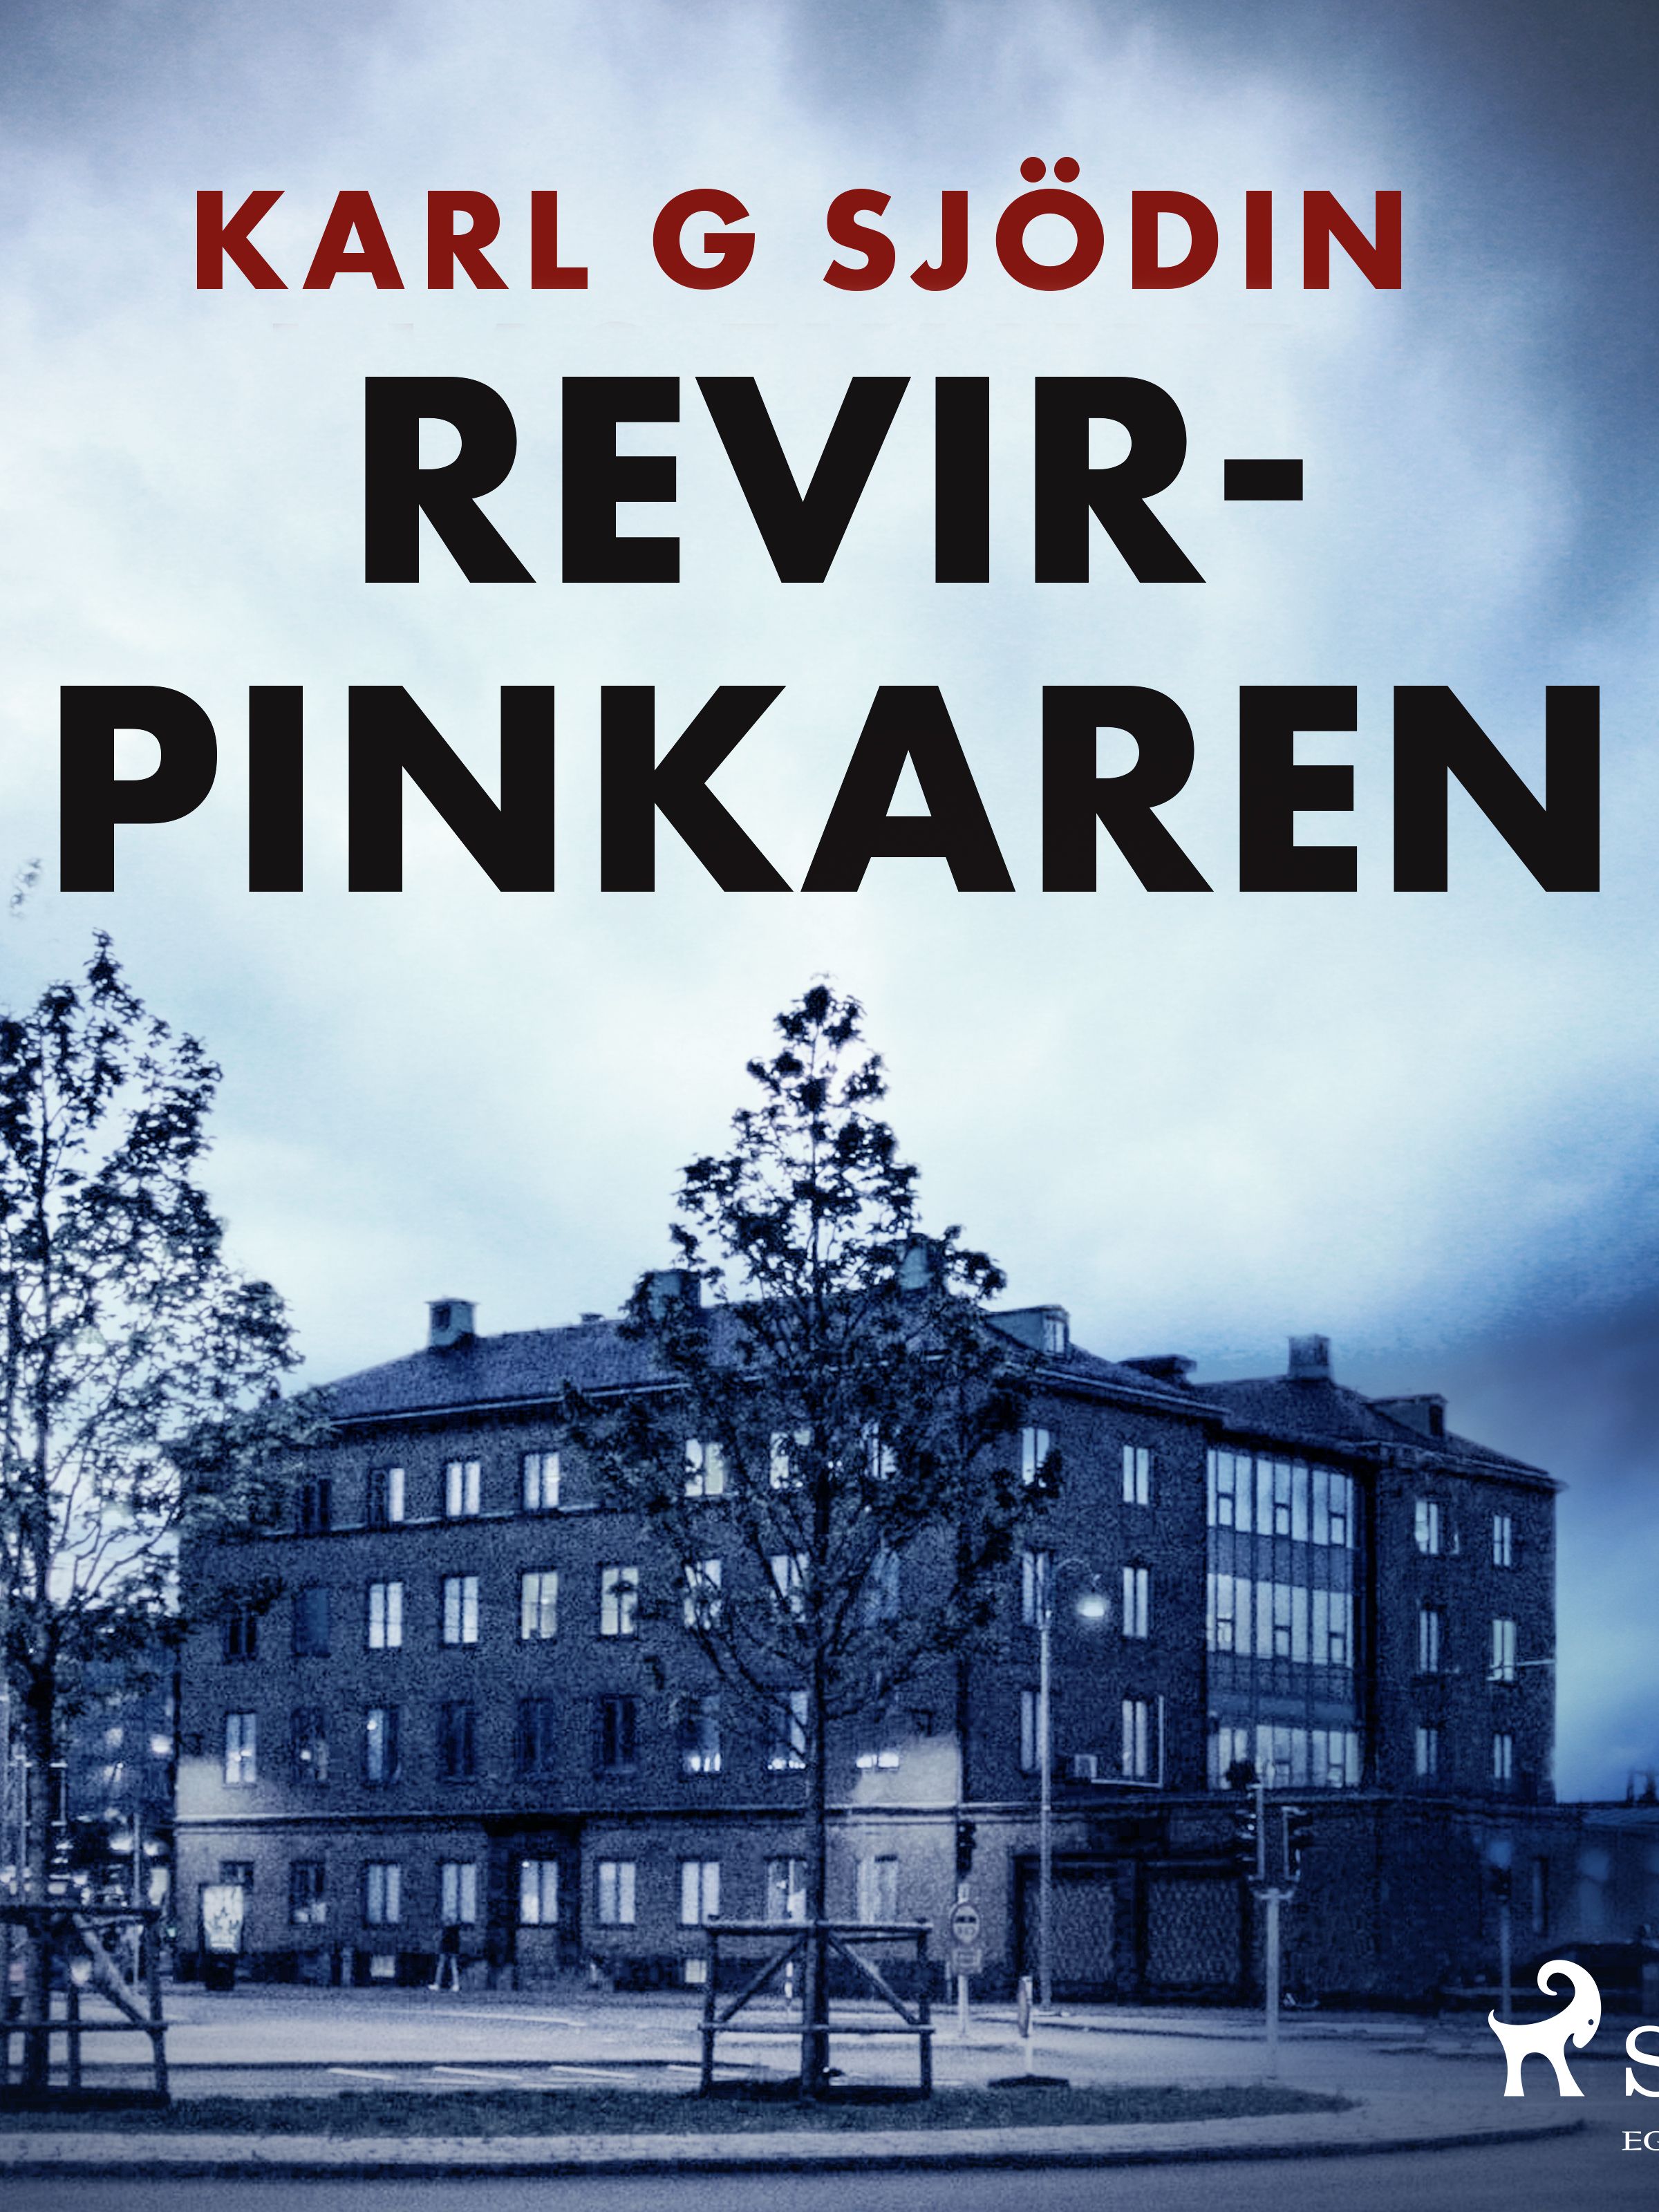 Revirpinkaren, e-bog af Karl G Sjödin